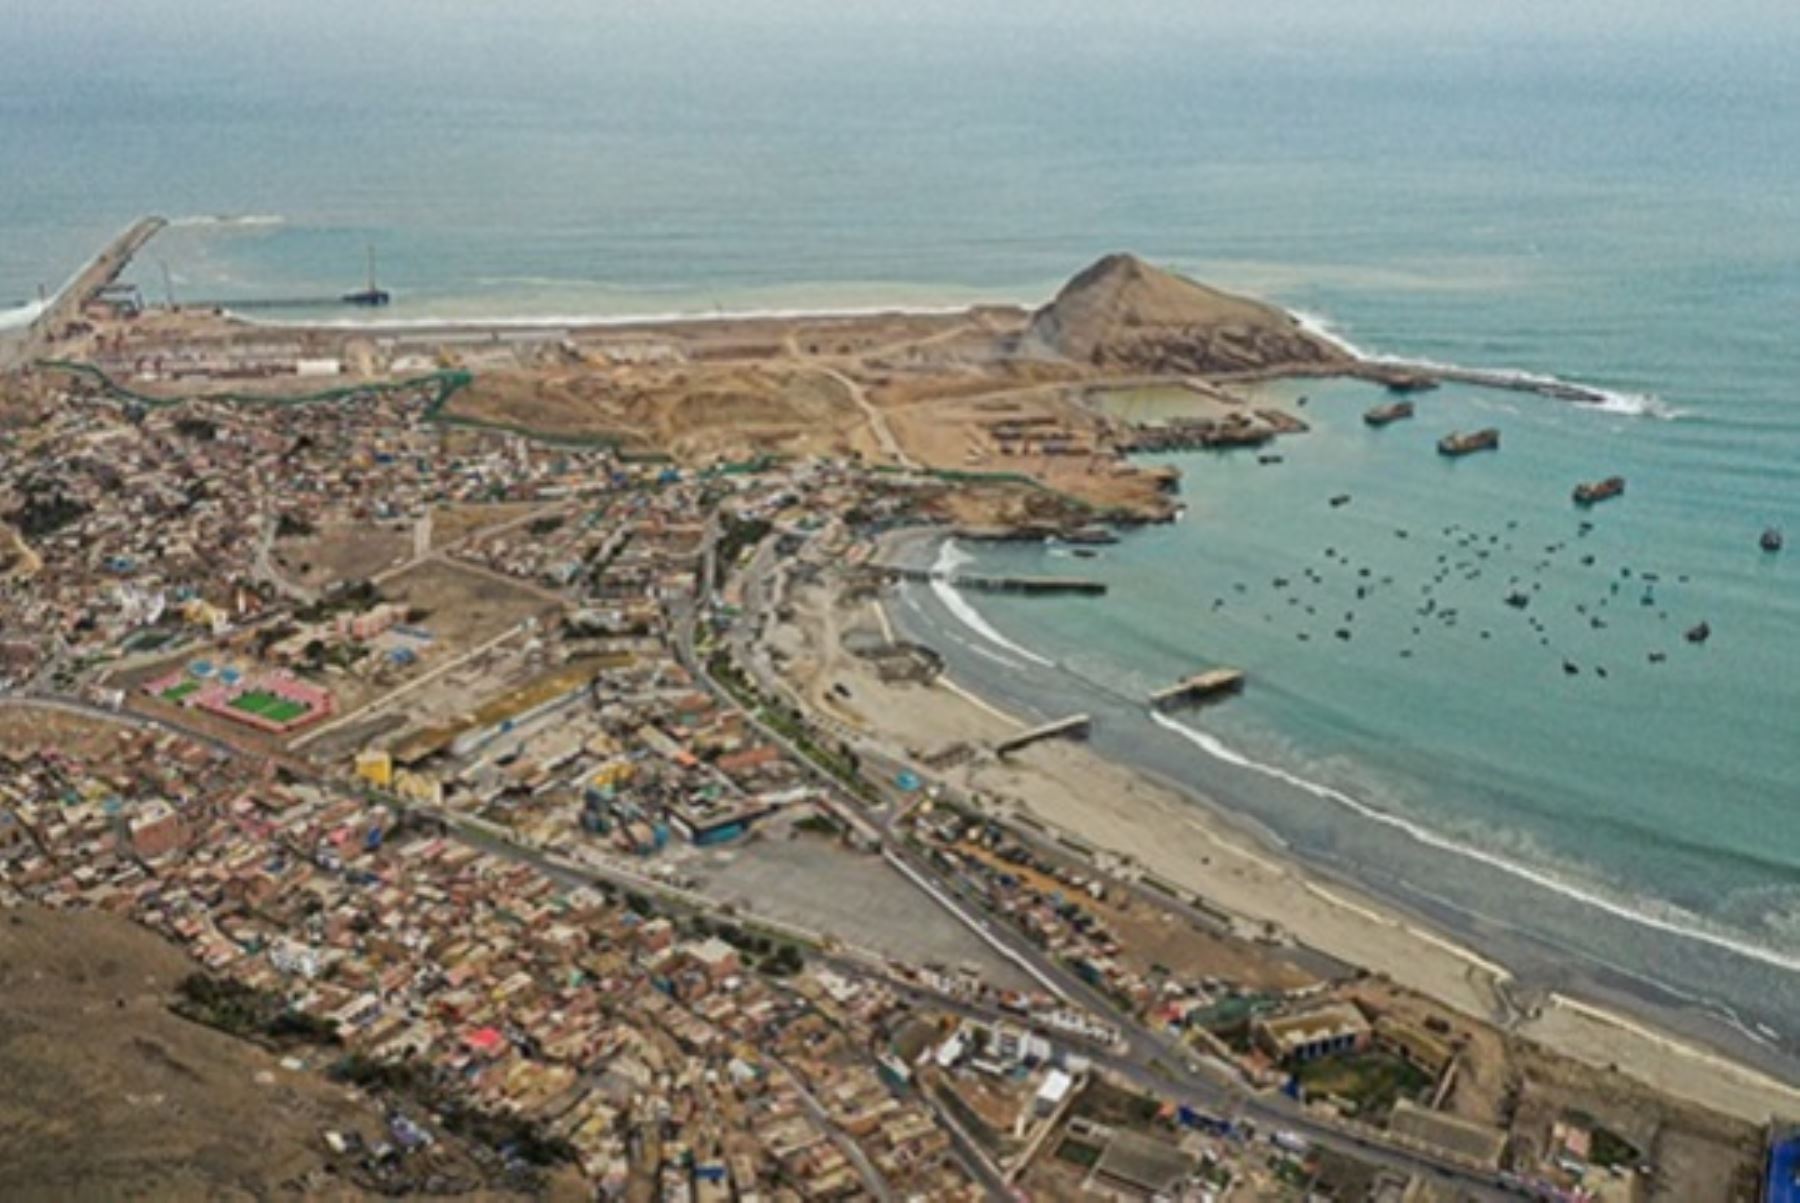 Vista de la localidad de Chancay, donde se construye el megapuerto que conectará Sudamérica y China. Cortesía